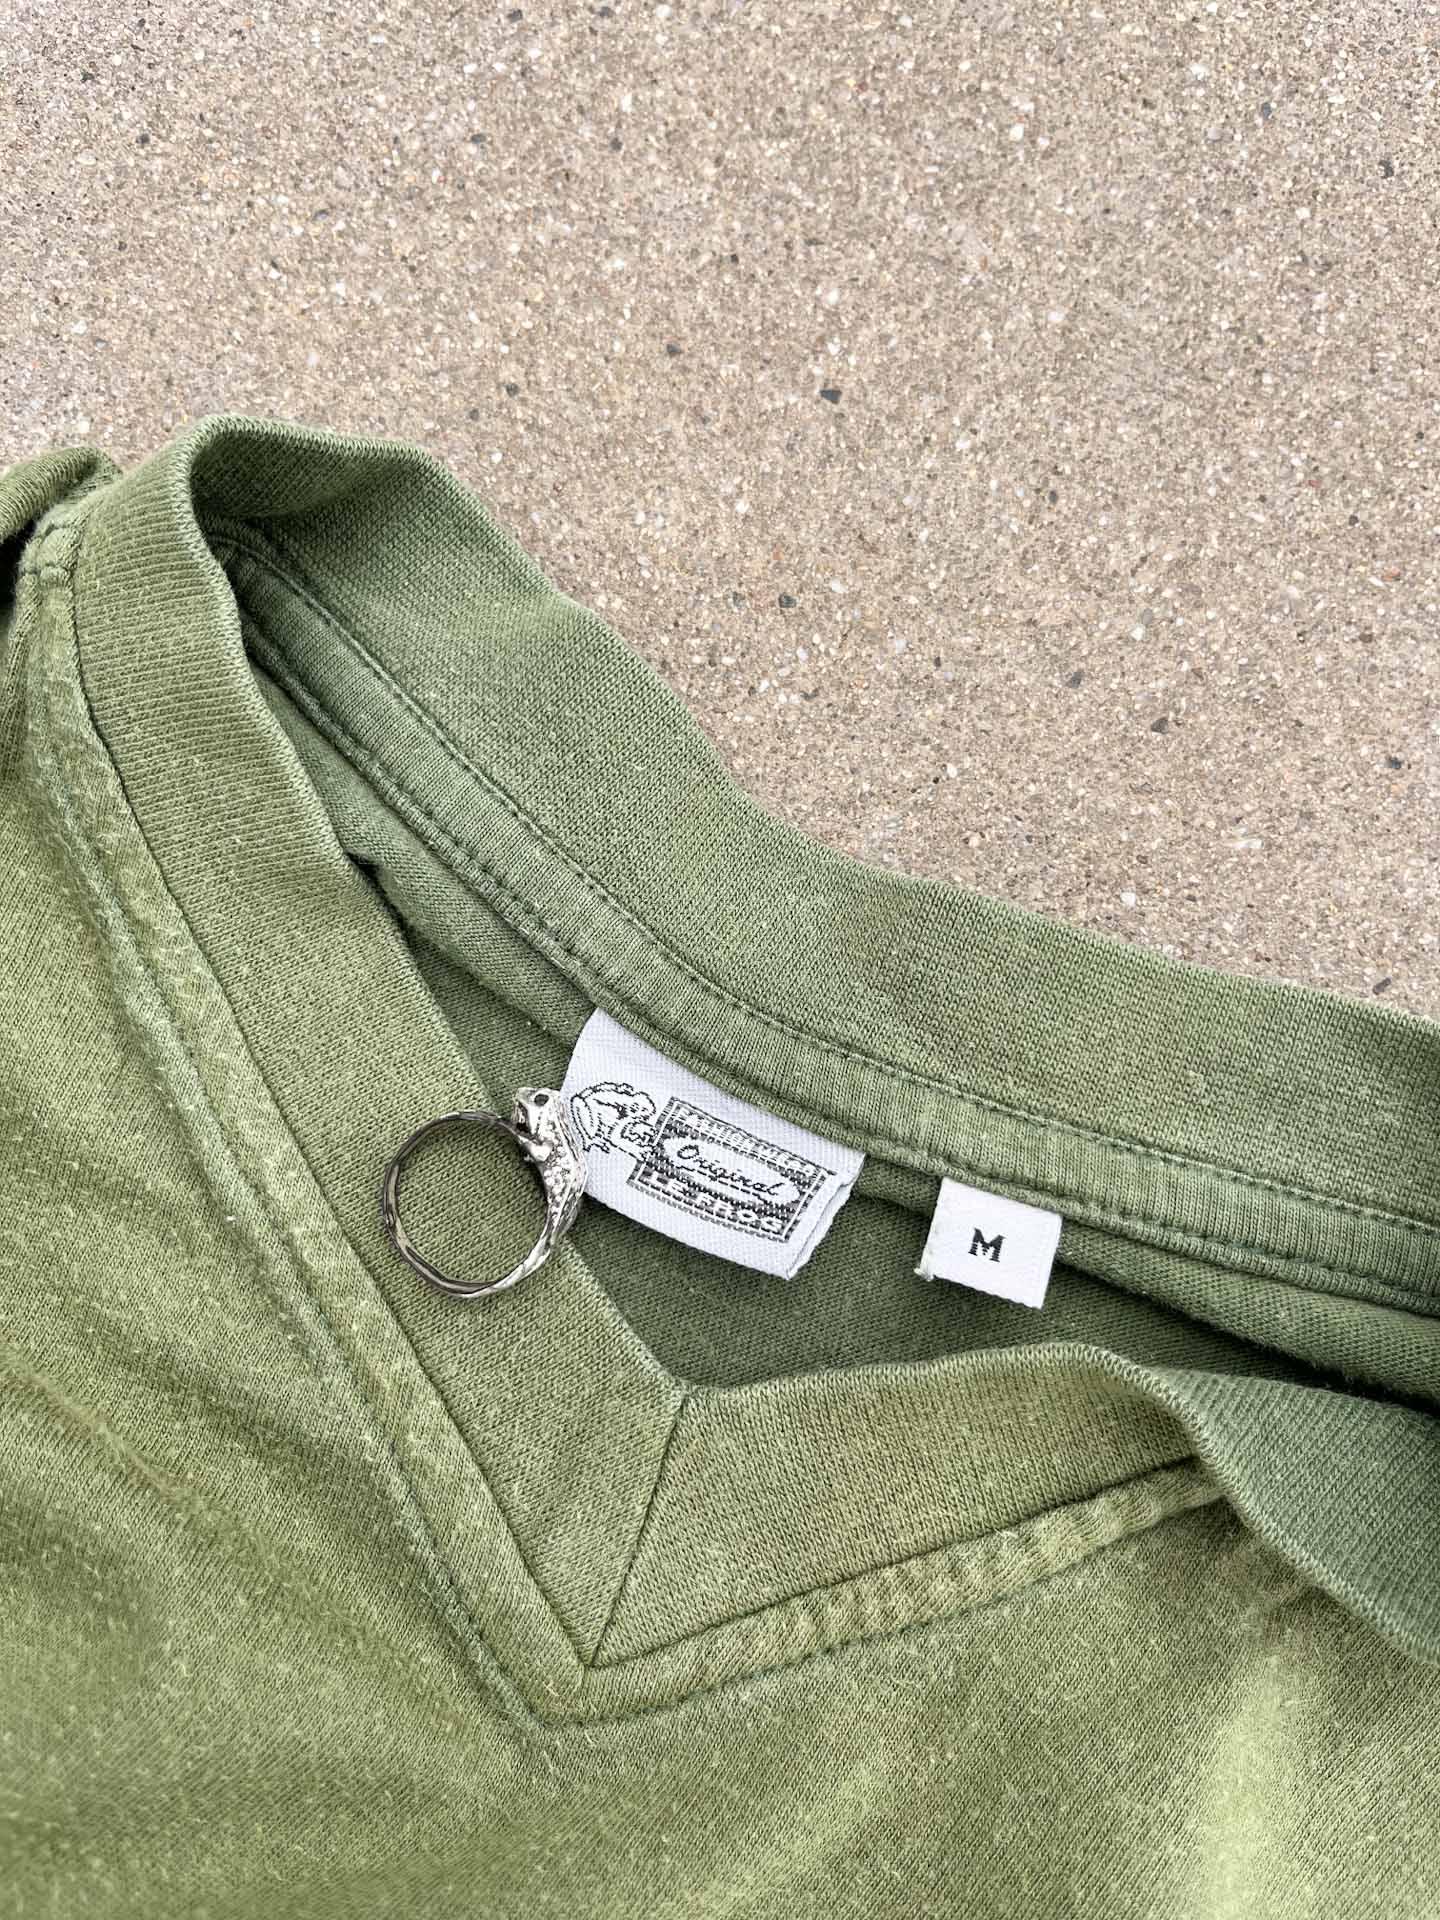 Le Frog vintage shirt - secondvintage